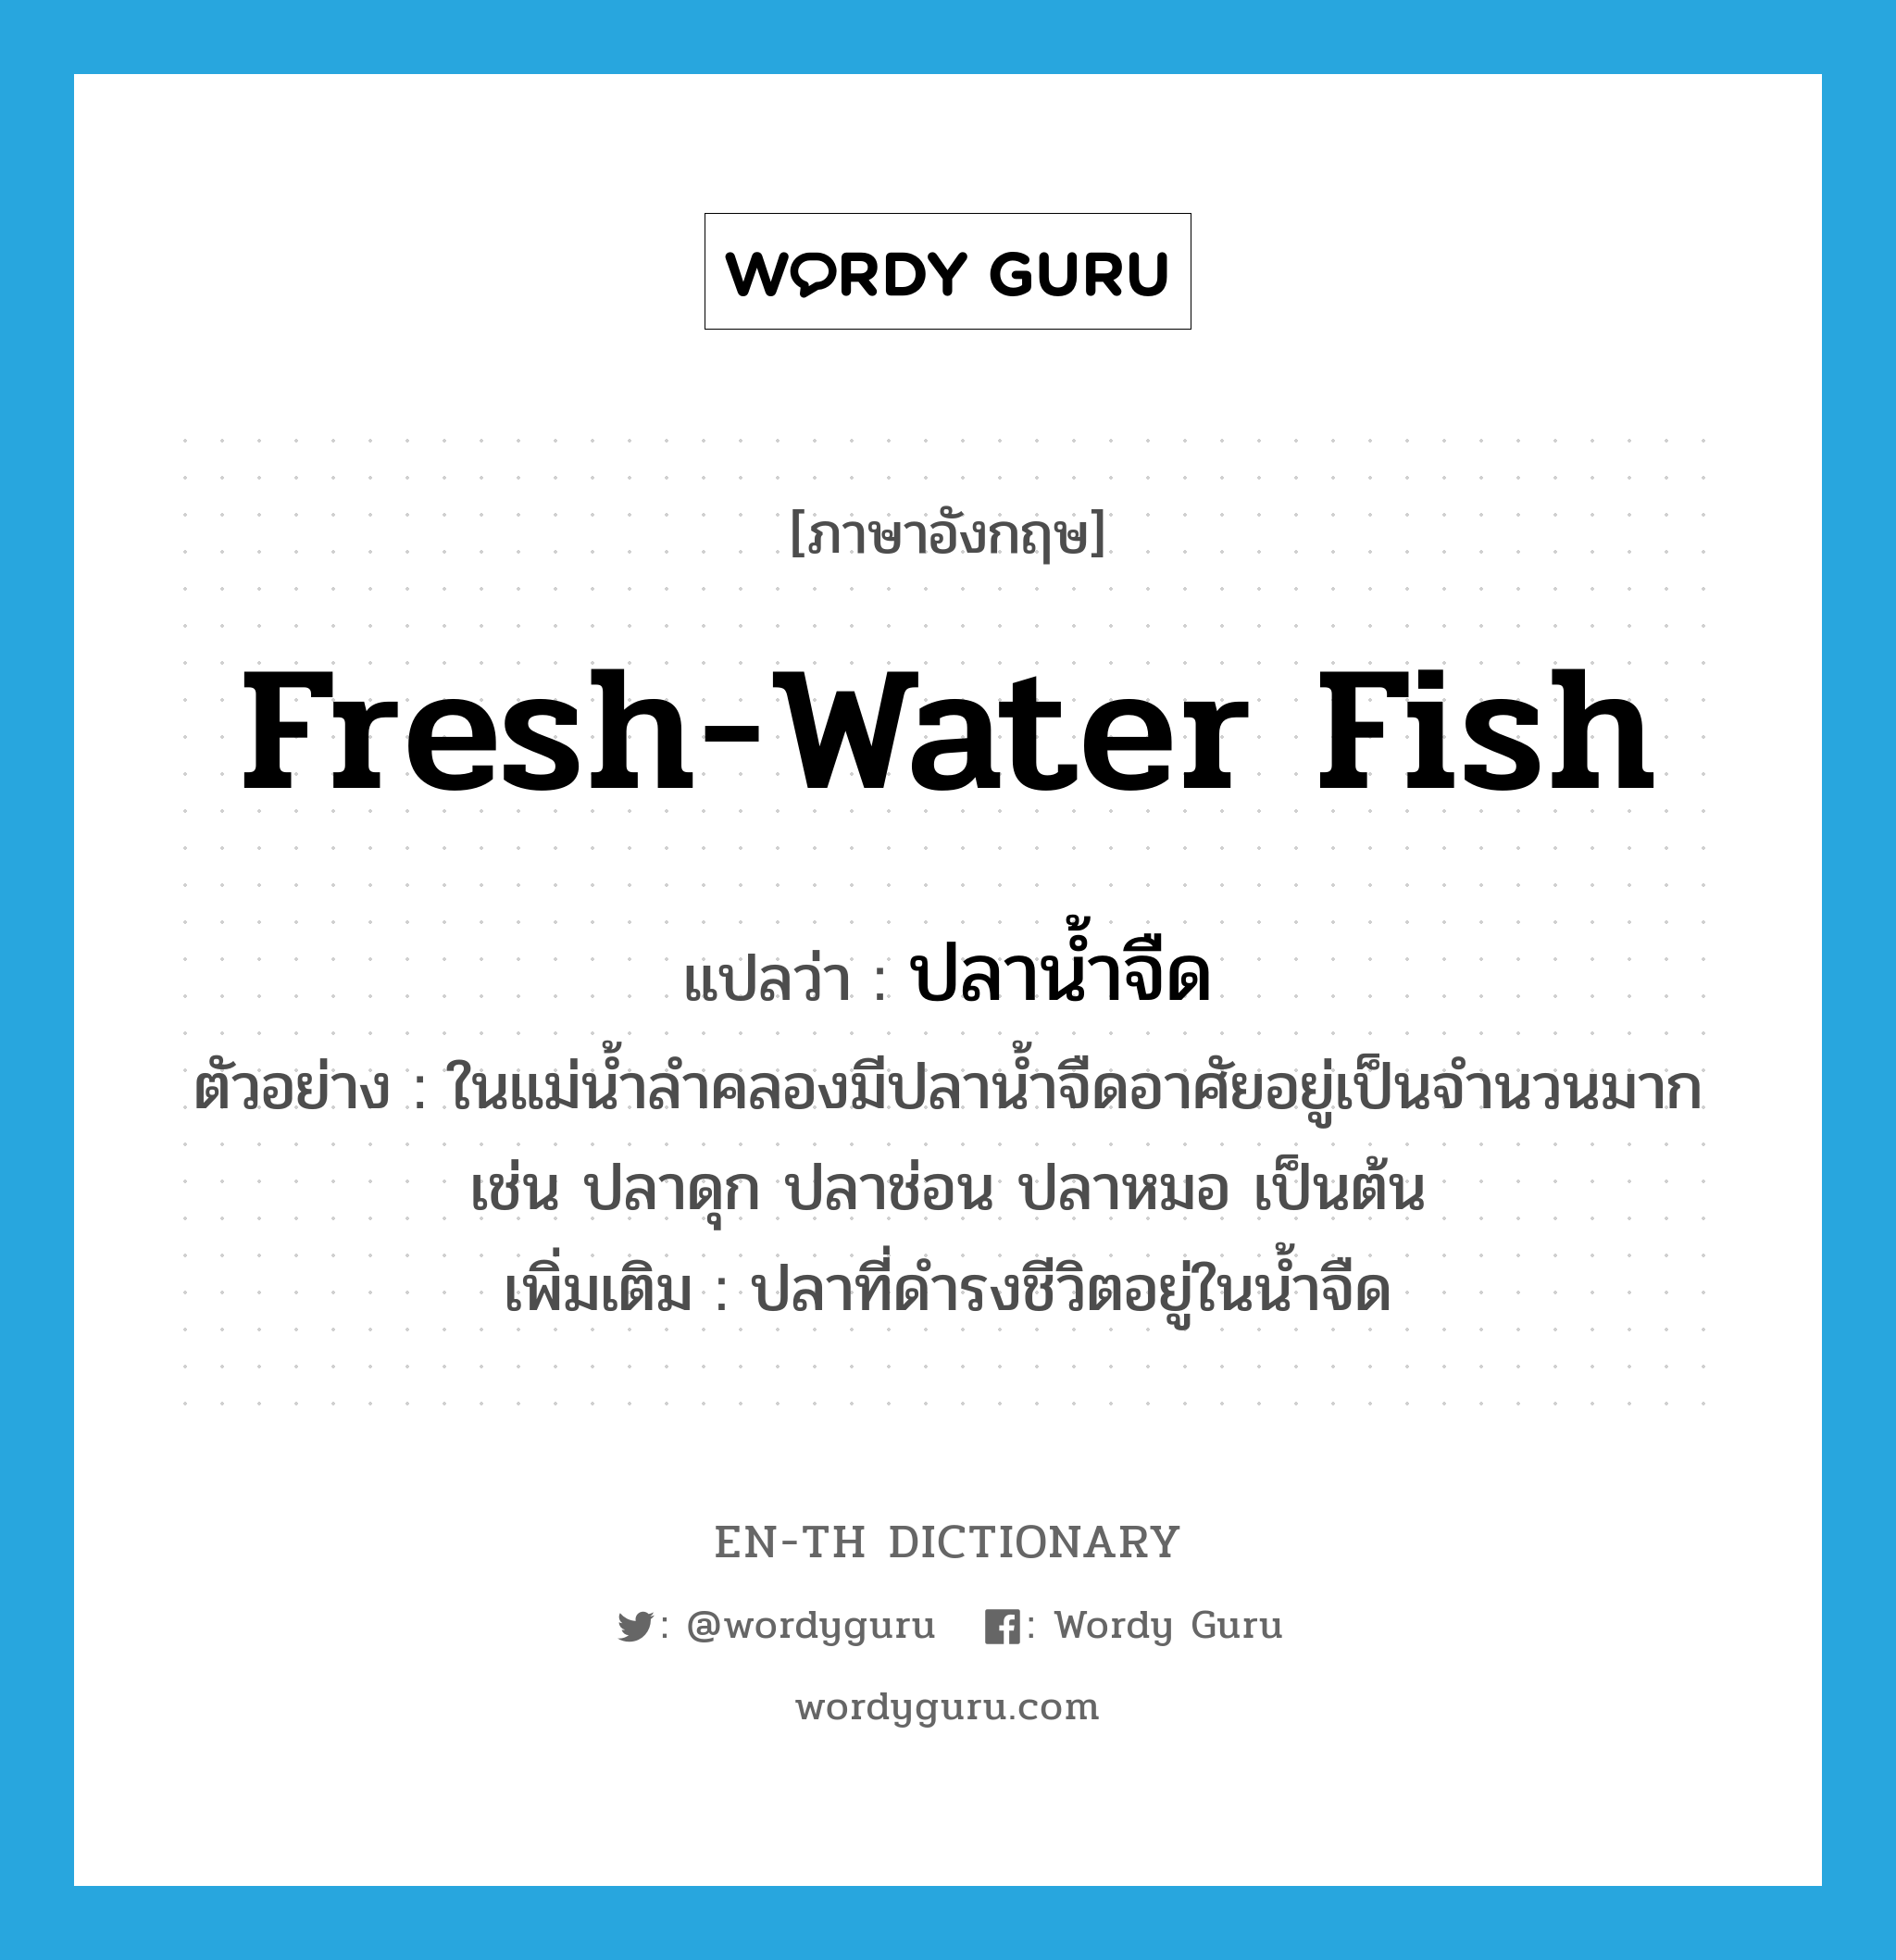 fresh-water fish แปลว่า?, คำศัพท์ภาษาอังกฤษ fresh-water fish แปลว่า ปลาน้ำจืด ประเภท N ตัวอย่าง ในแม่น้ำลำคลองมีปลาน้ำจืดอาศัยอยู่เป็นจำนวนมาก เช่น ปลาดุก ปลาช่อน ปลาหมอ เป็นต้น เพิ่มเติม ปลาที่ดำรงชีวิตอยู่ในน้ำจืด หมวด N